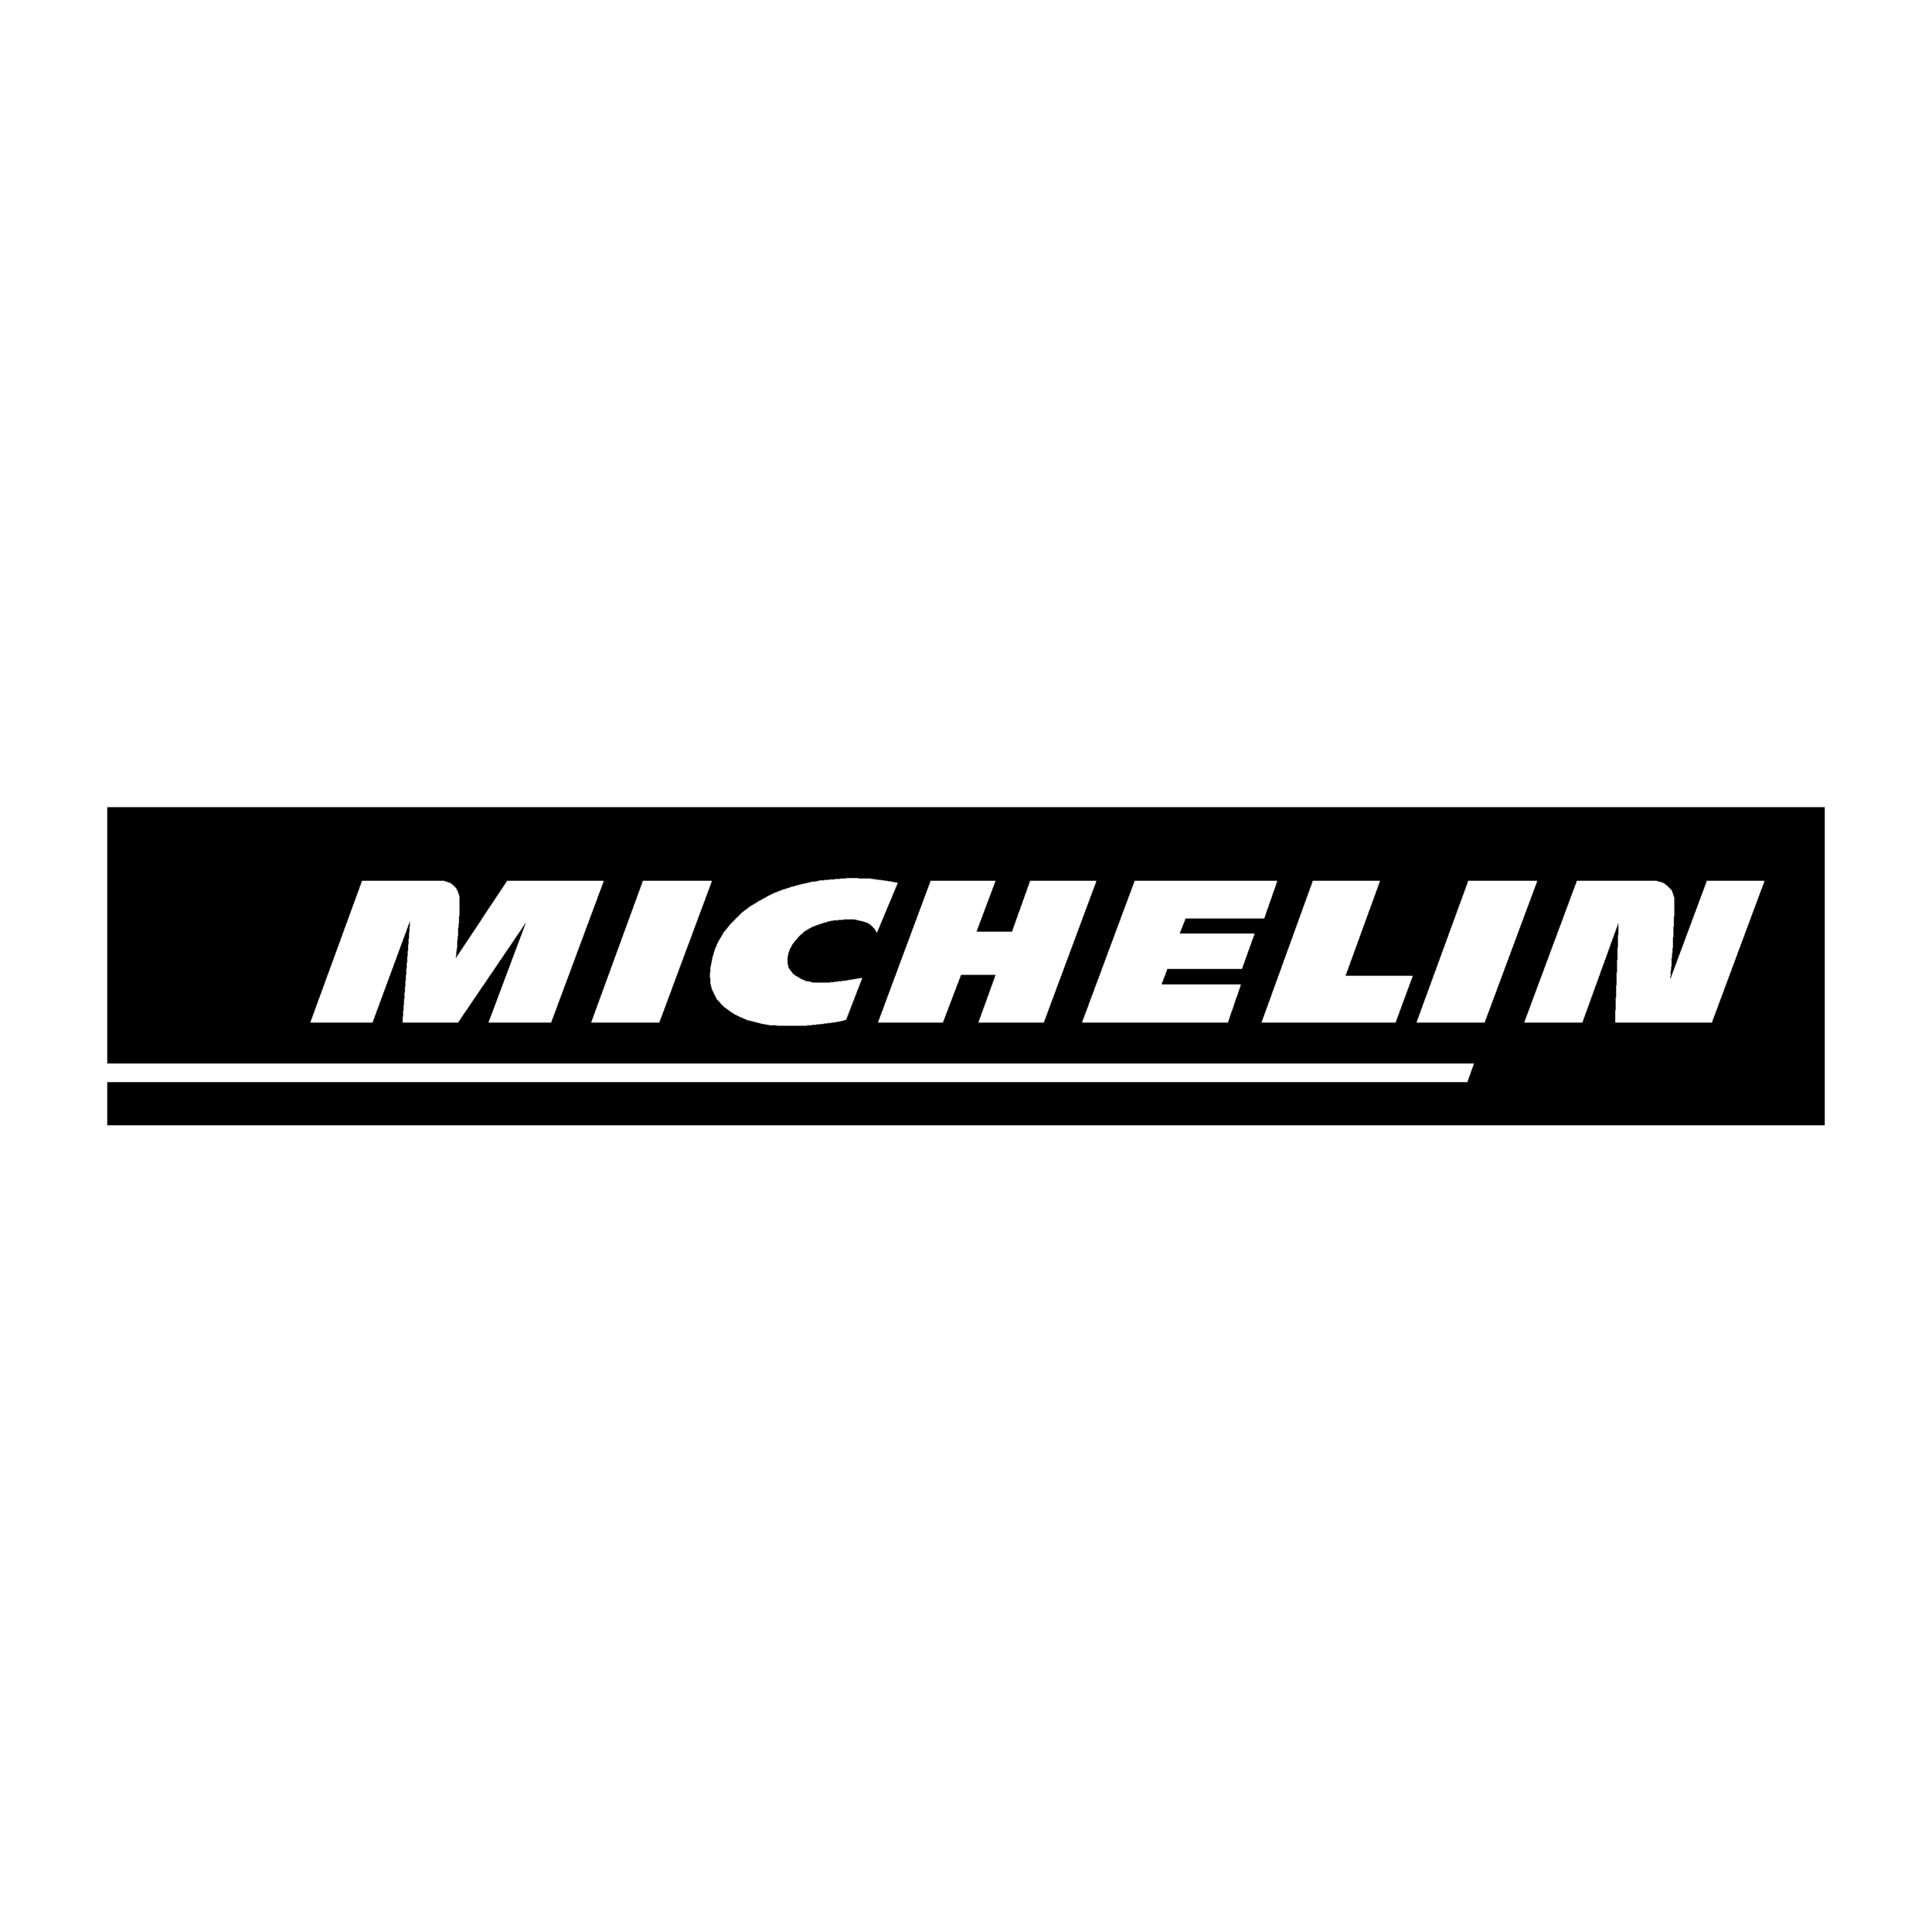 sticker michelin ref 1 tuning audio sonorisation car auto moto camion competition deco rallye autocollant